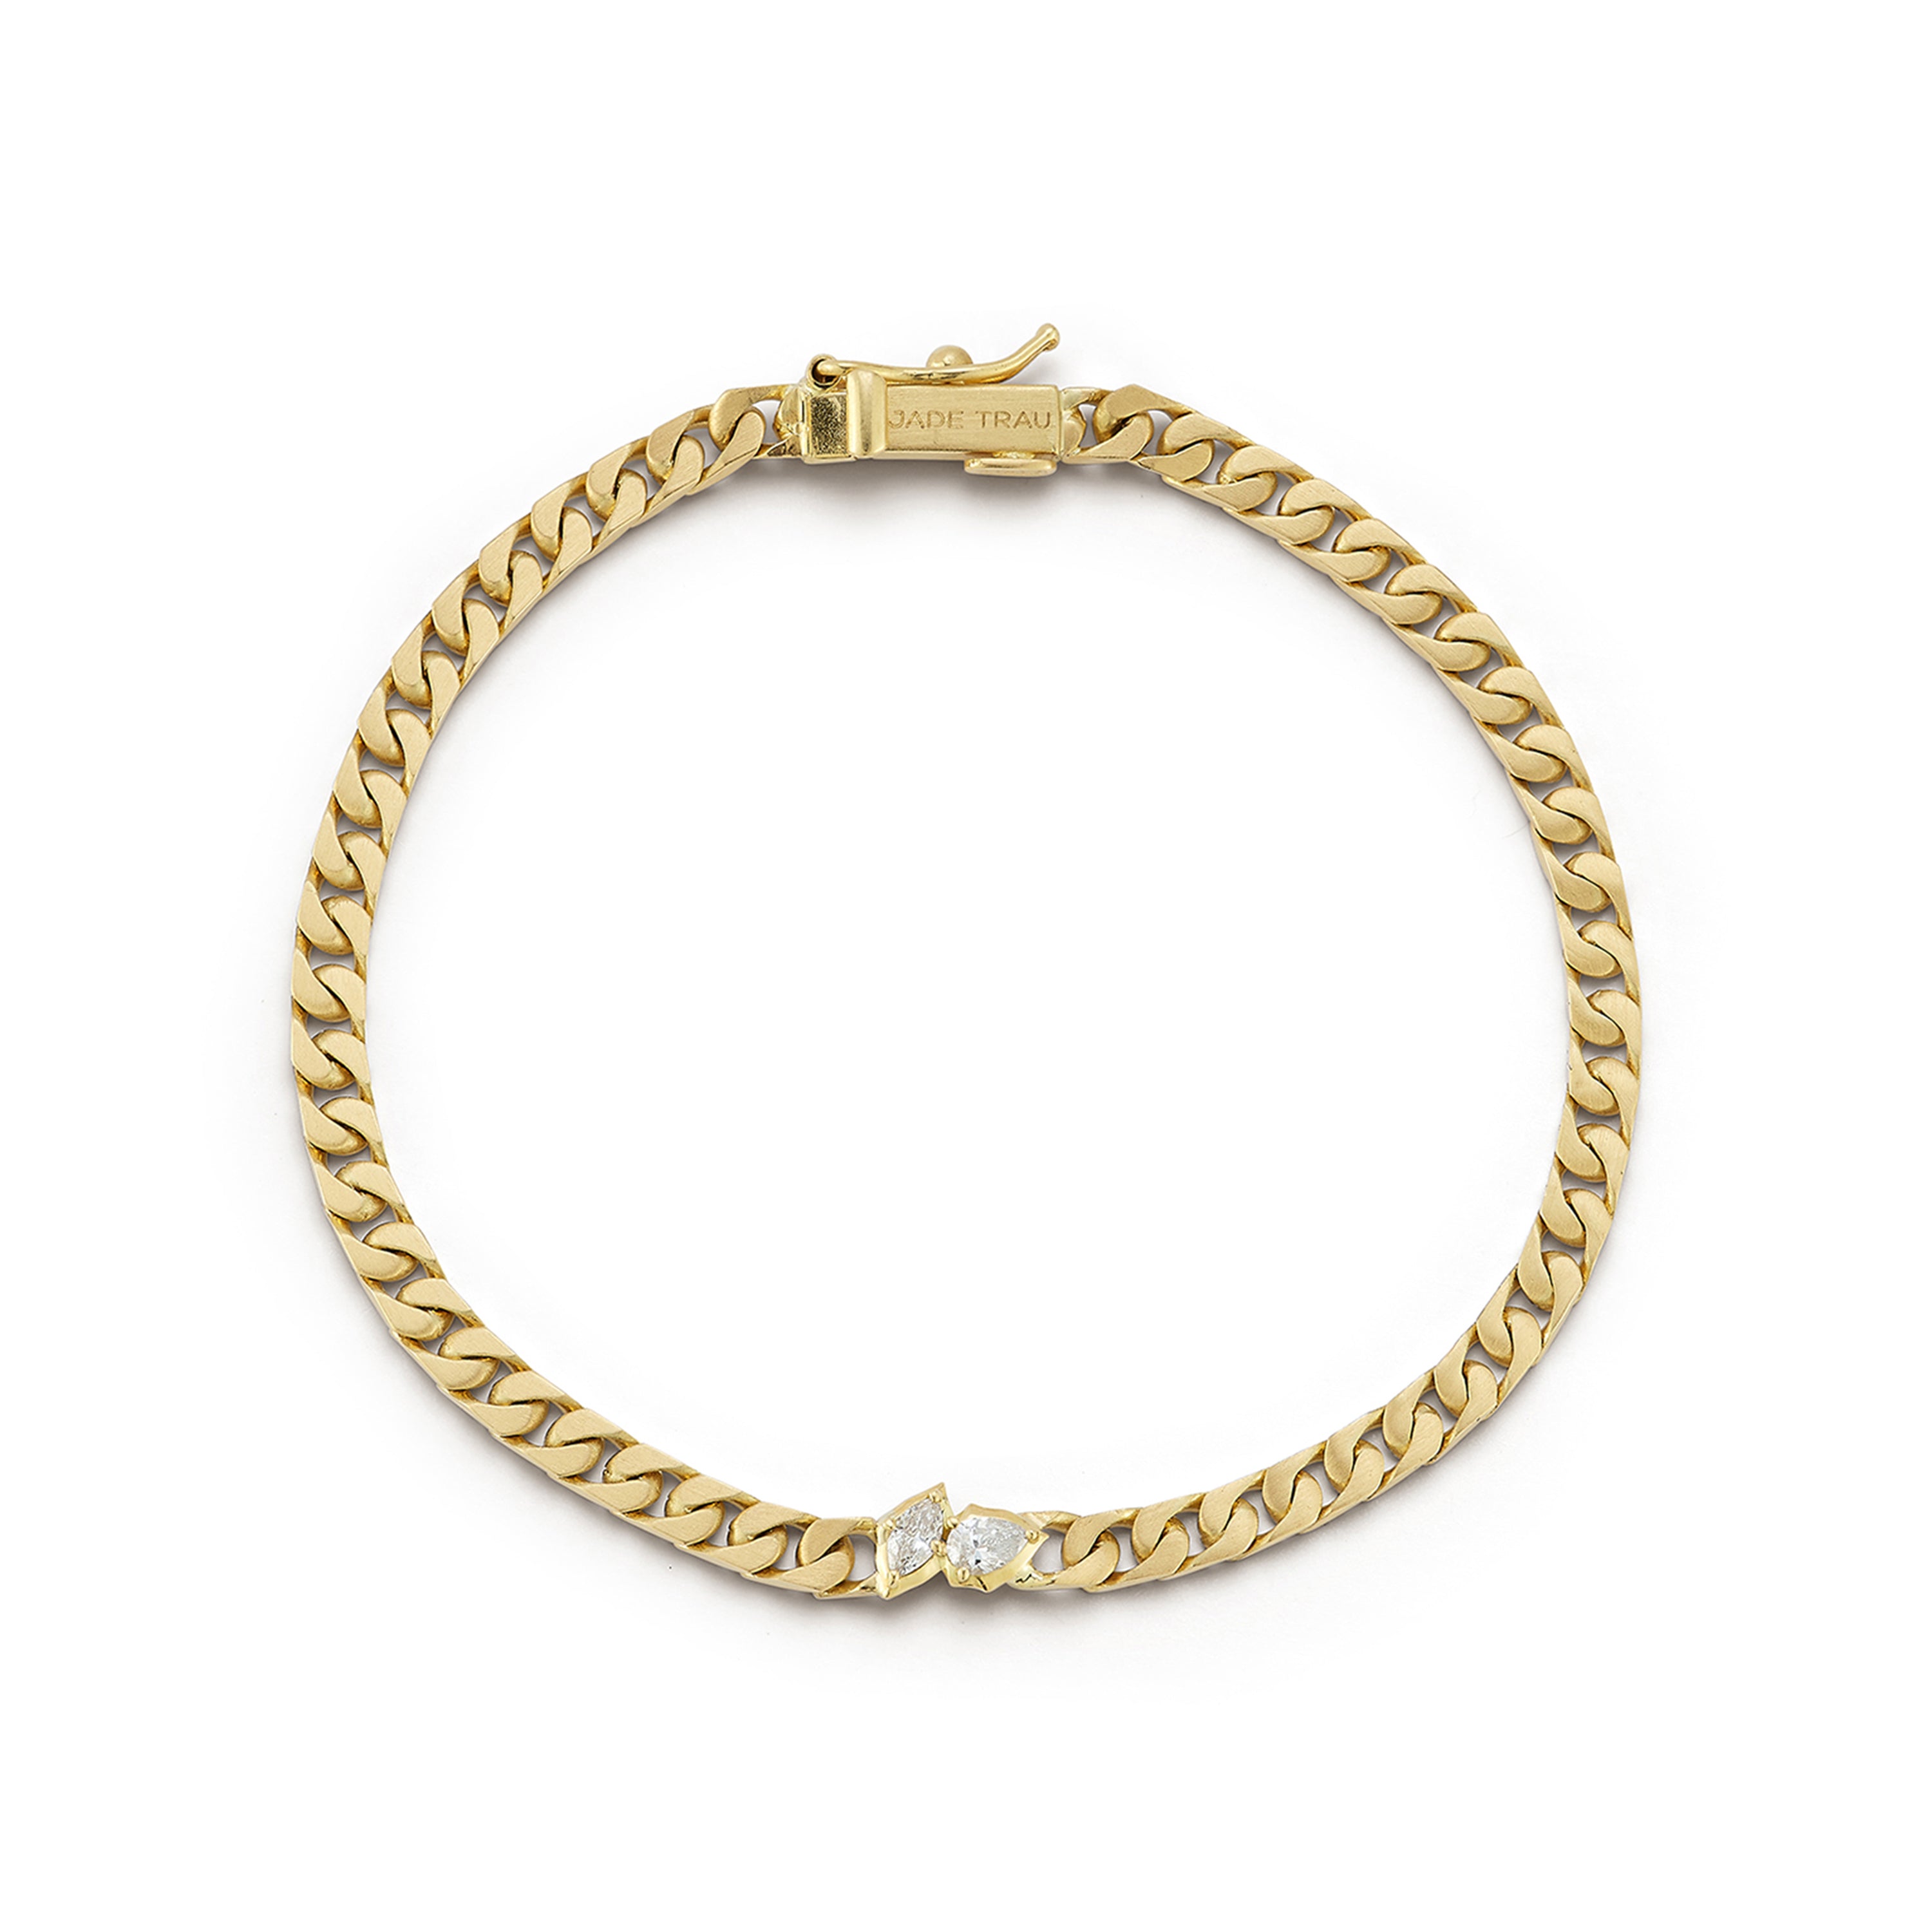 Luxe Chain Bracelets